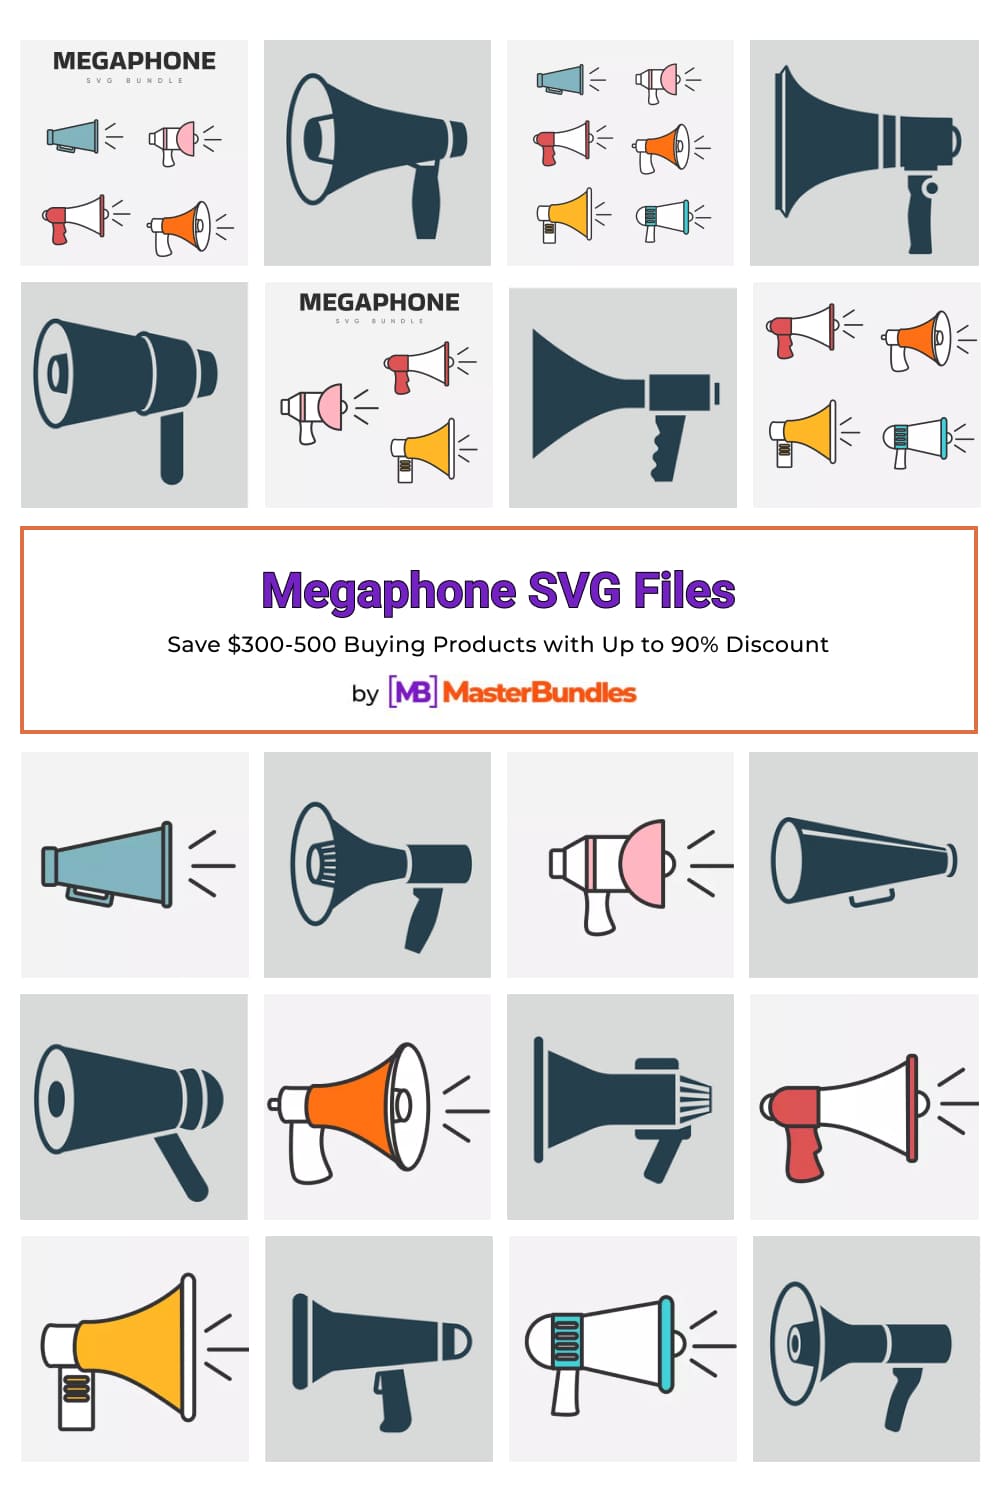 Megaphone SVG Files Pinterest image.